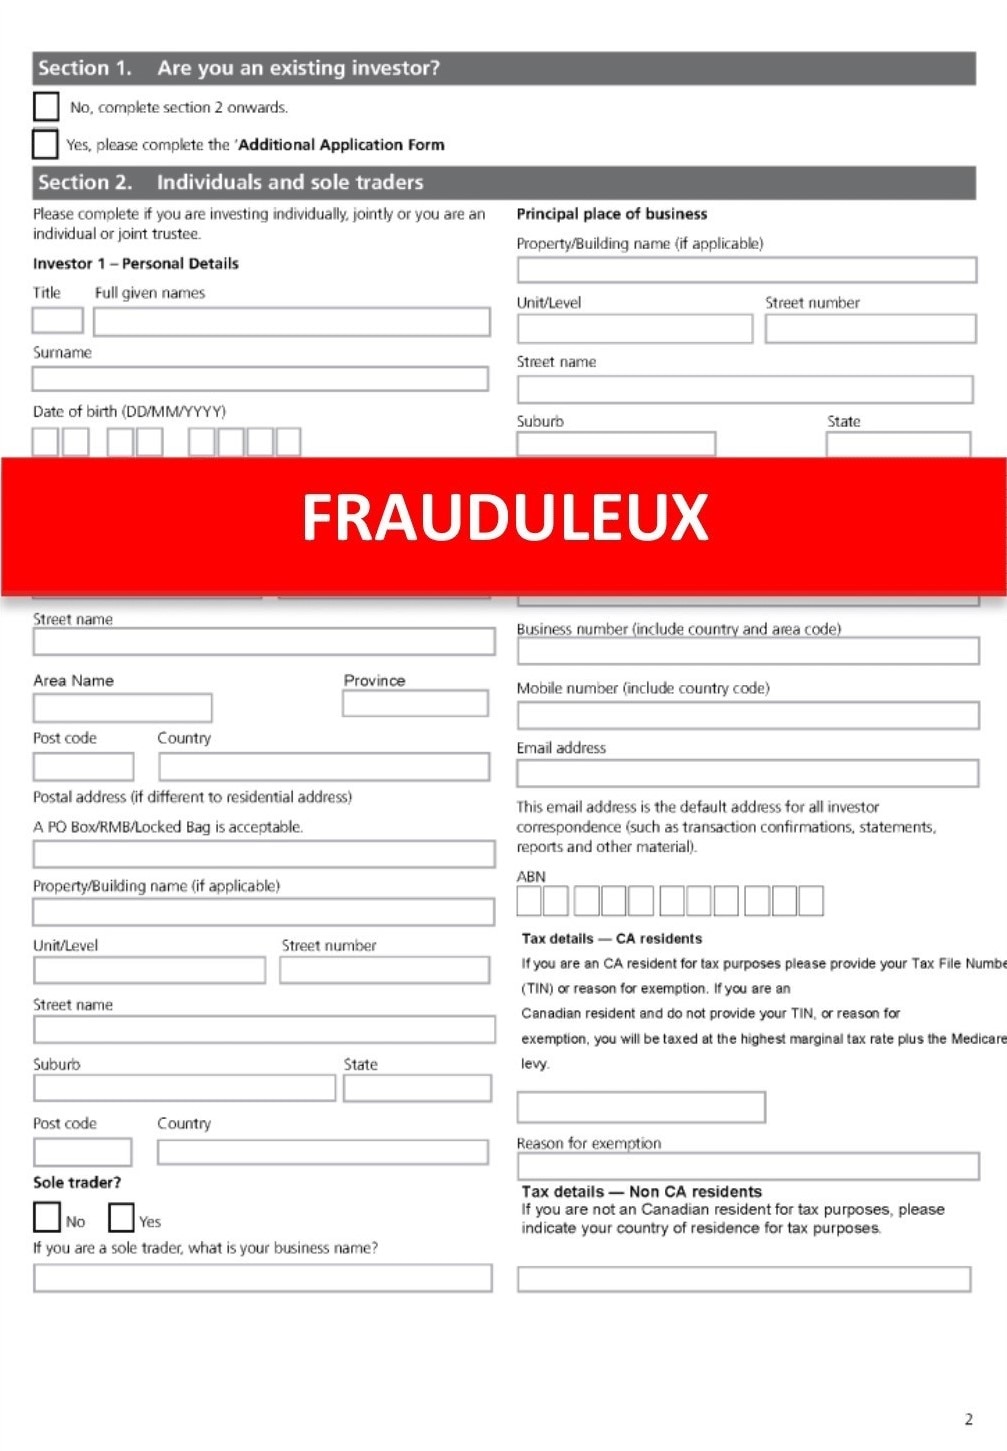 Exemple d'un formulaire de demande de CPG frauduleux dans le but de voler des renseignements personnels tels que la date de naissance et les données fiscales